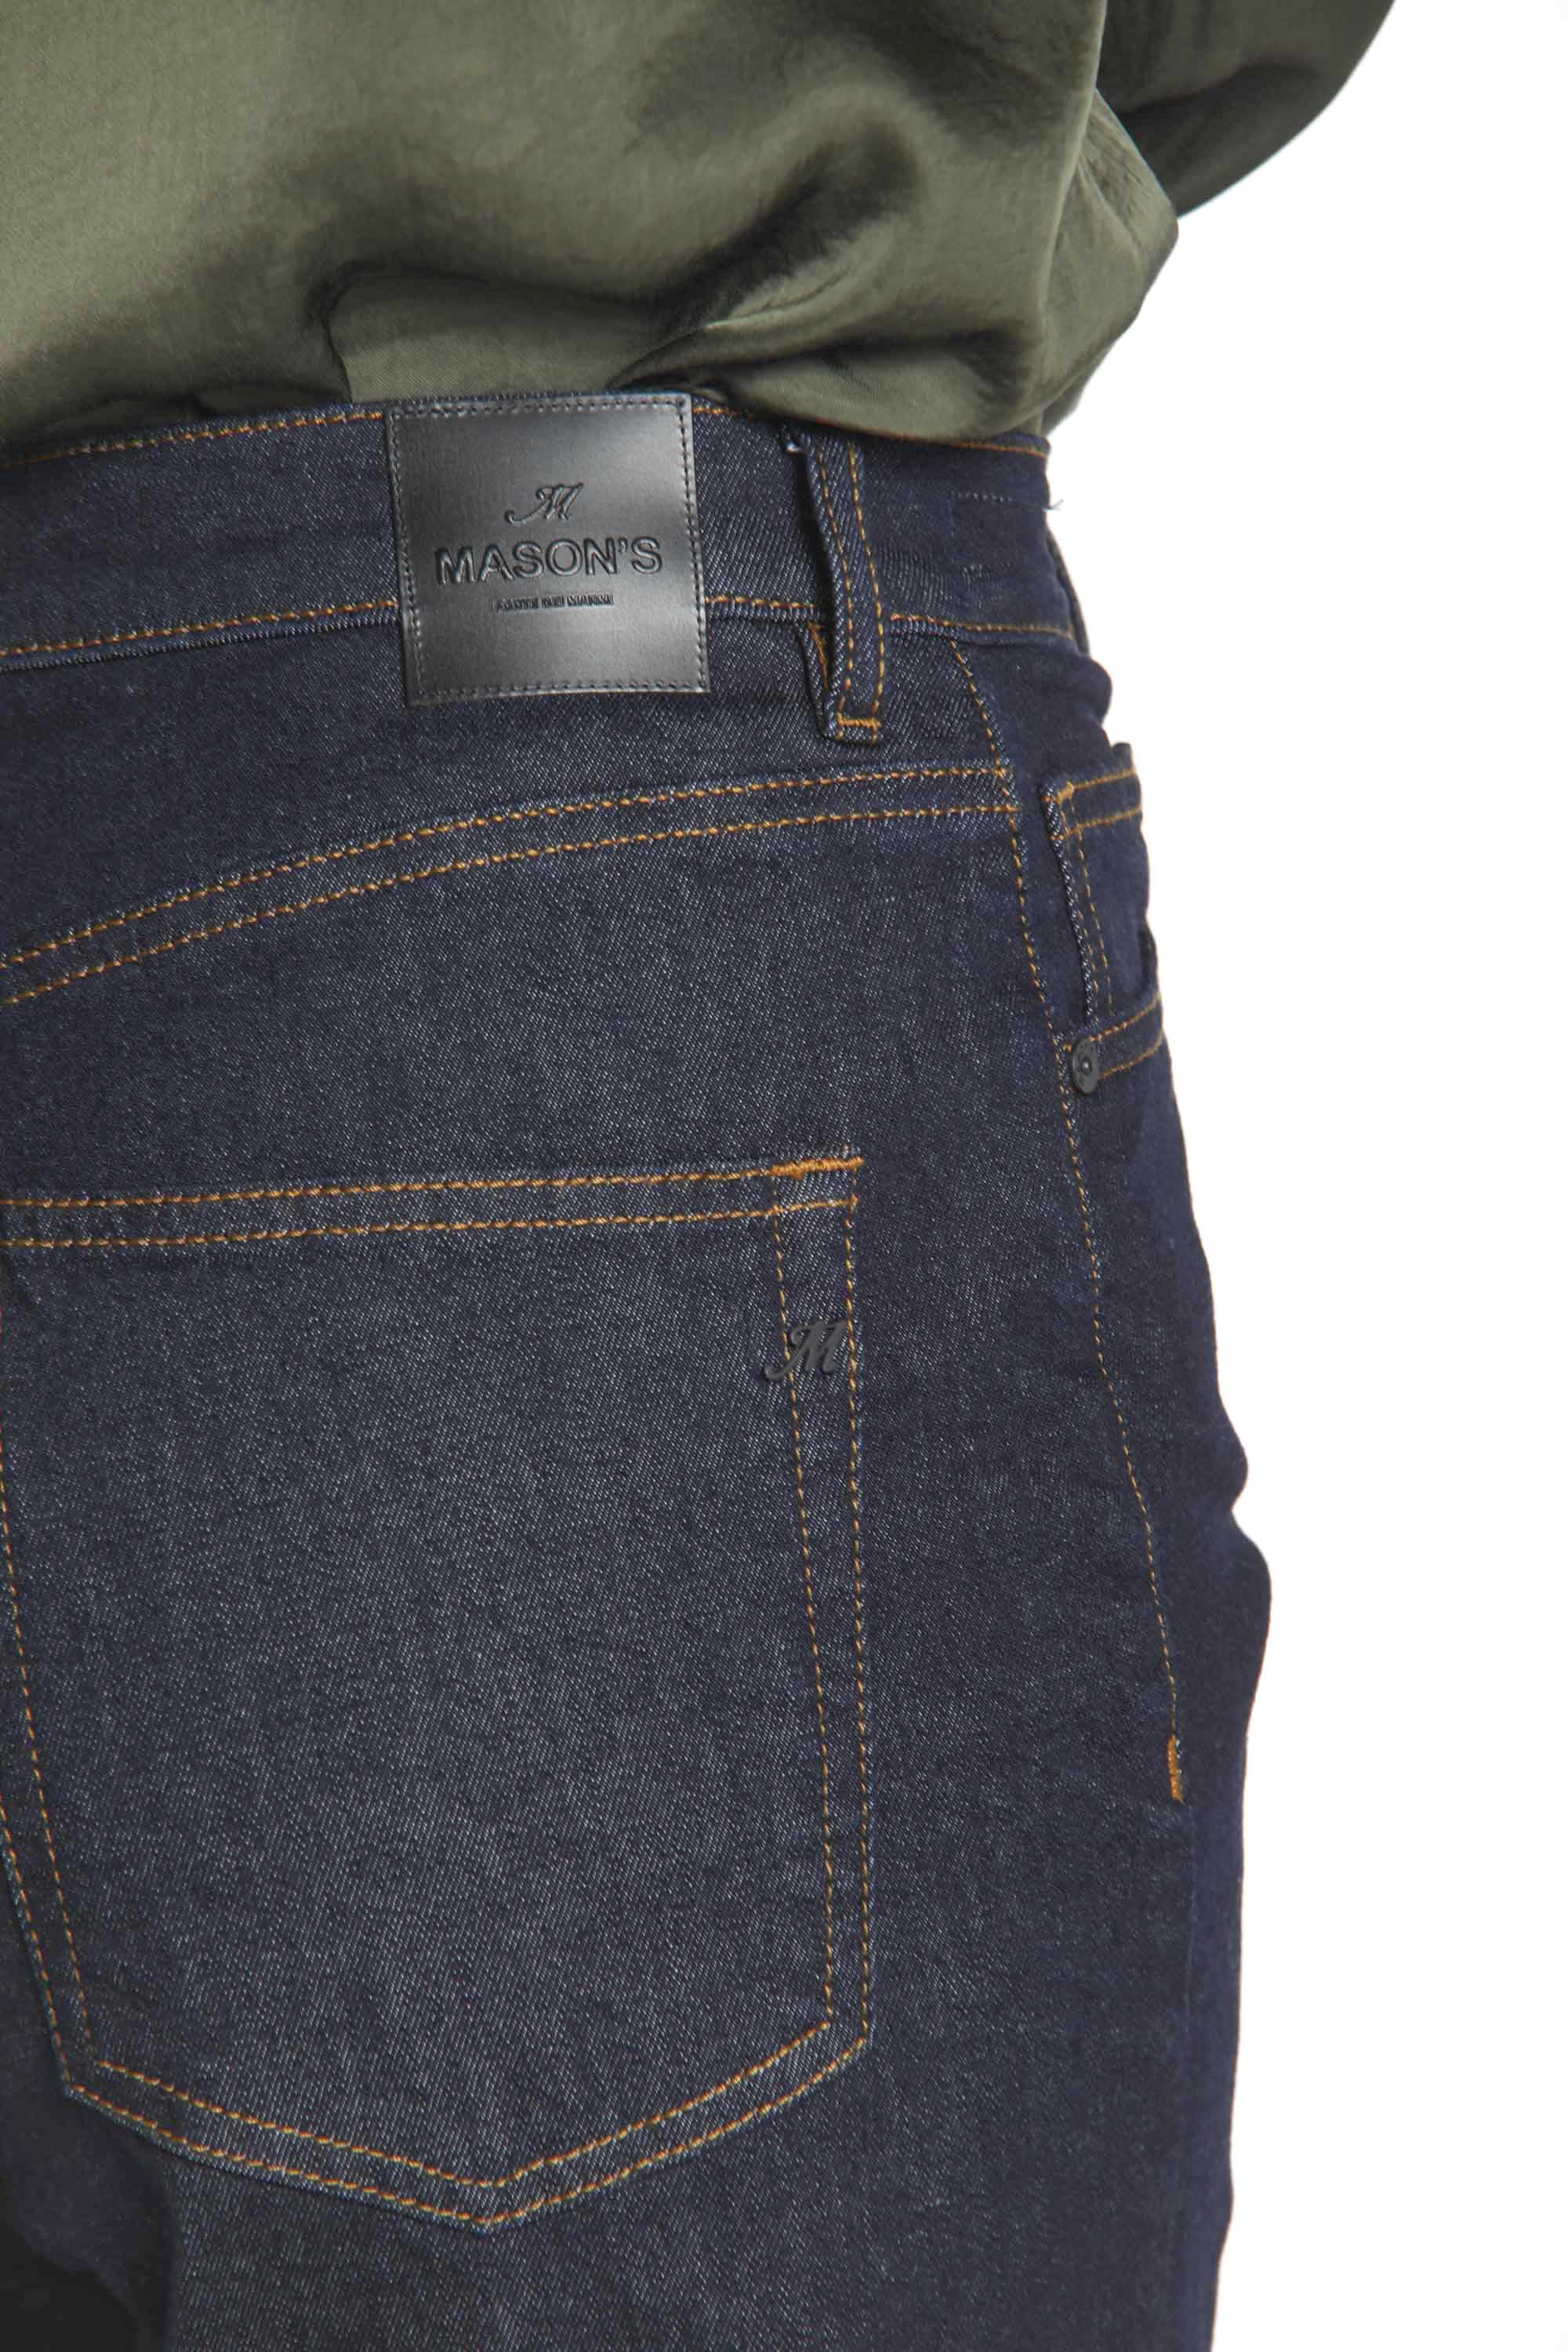 Image 5 de pantalon 5 poches pour femmes en denim bleu marine modèle Sienna de Mason's